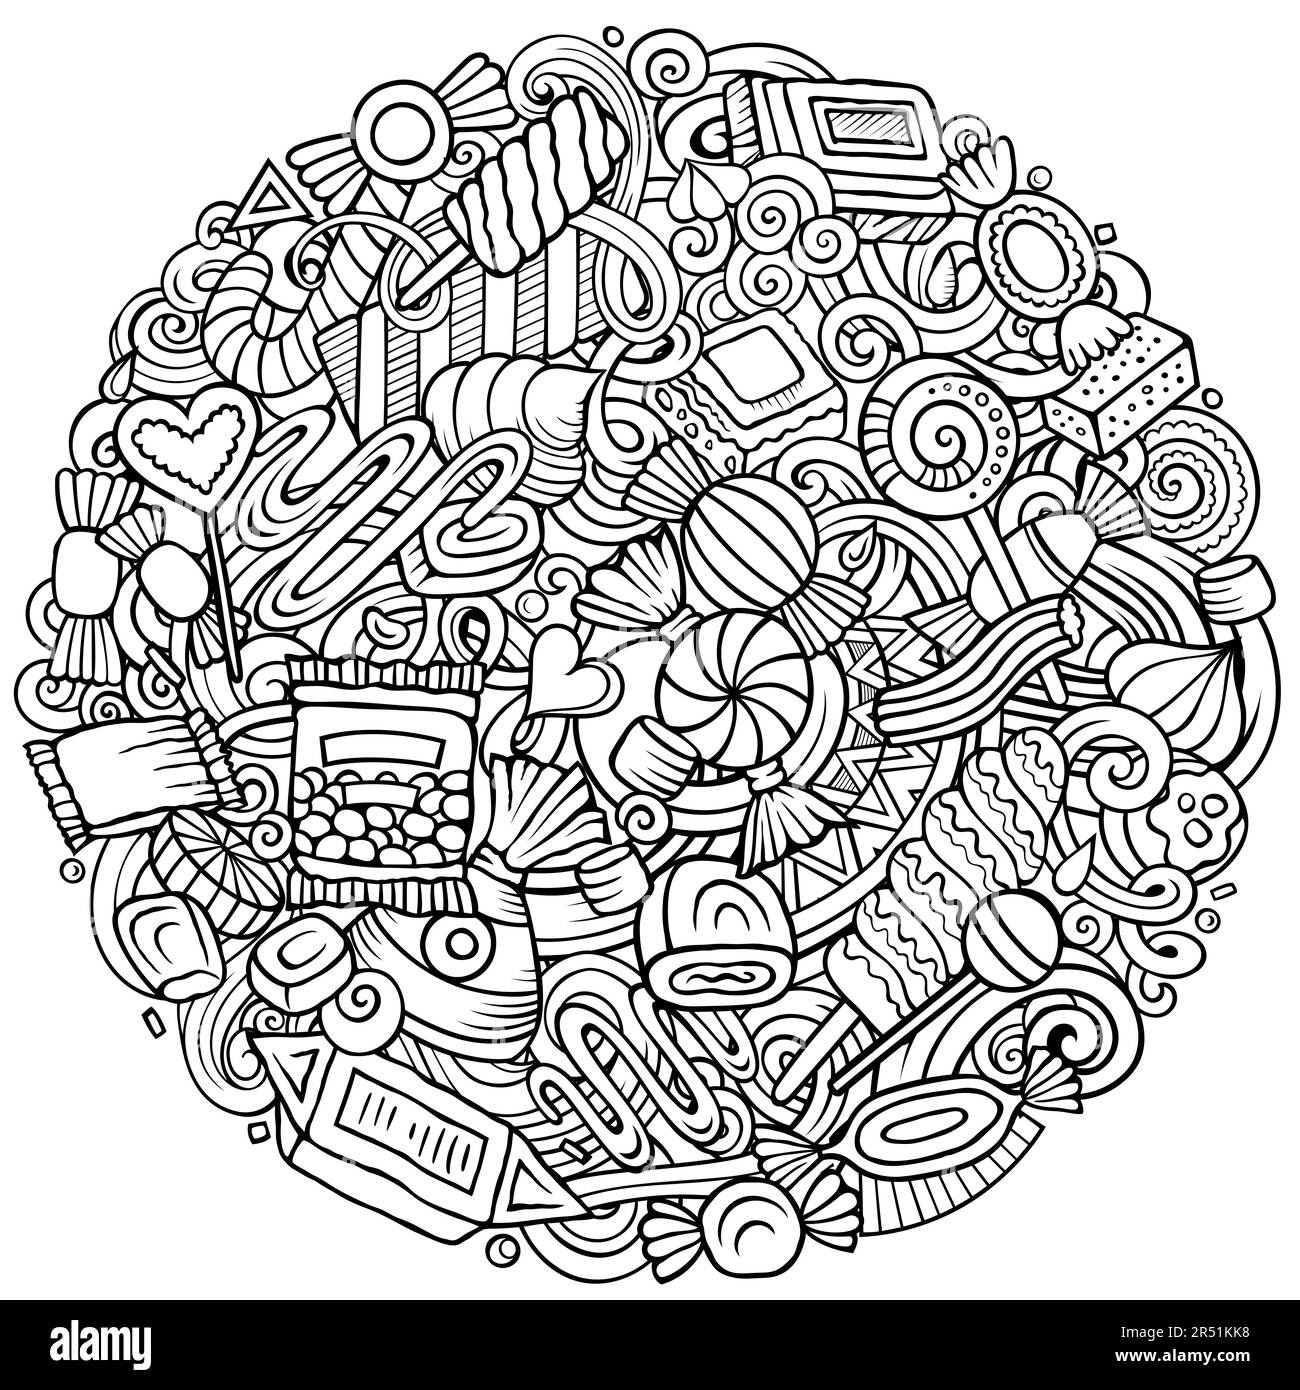 Bonbons Cartoon-Vektor runde Kritzeleien Illustration. Süßes Essen. Konfektionierungselemente und Hintergrund von Objekten. Ein komisches Bild. Alle Elemente sind Stock Vektor